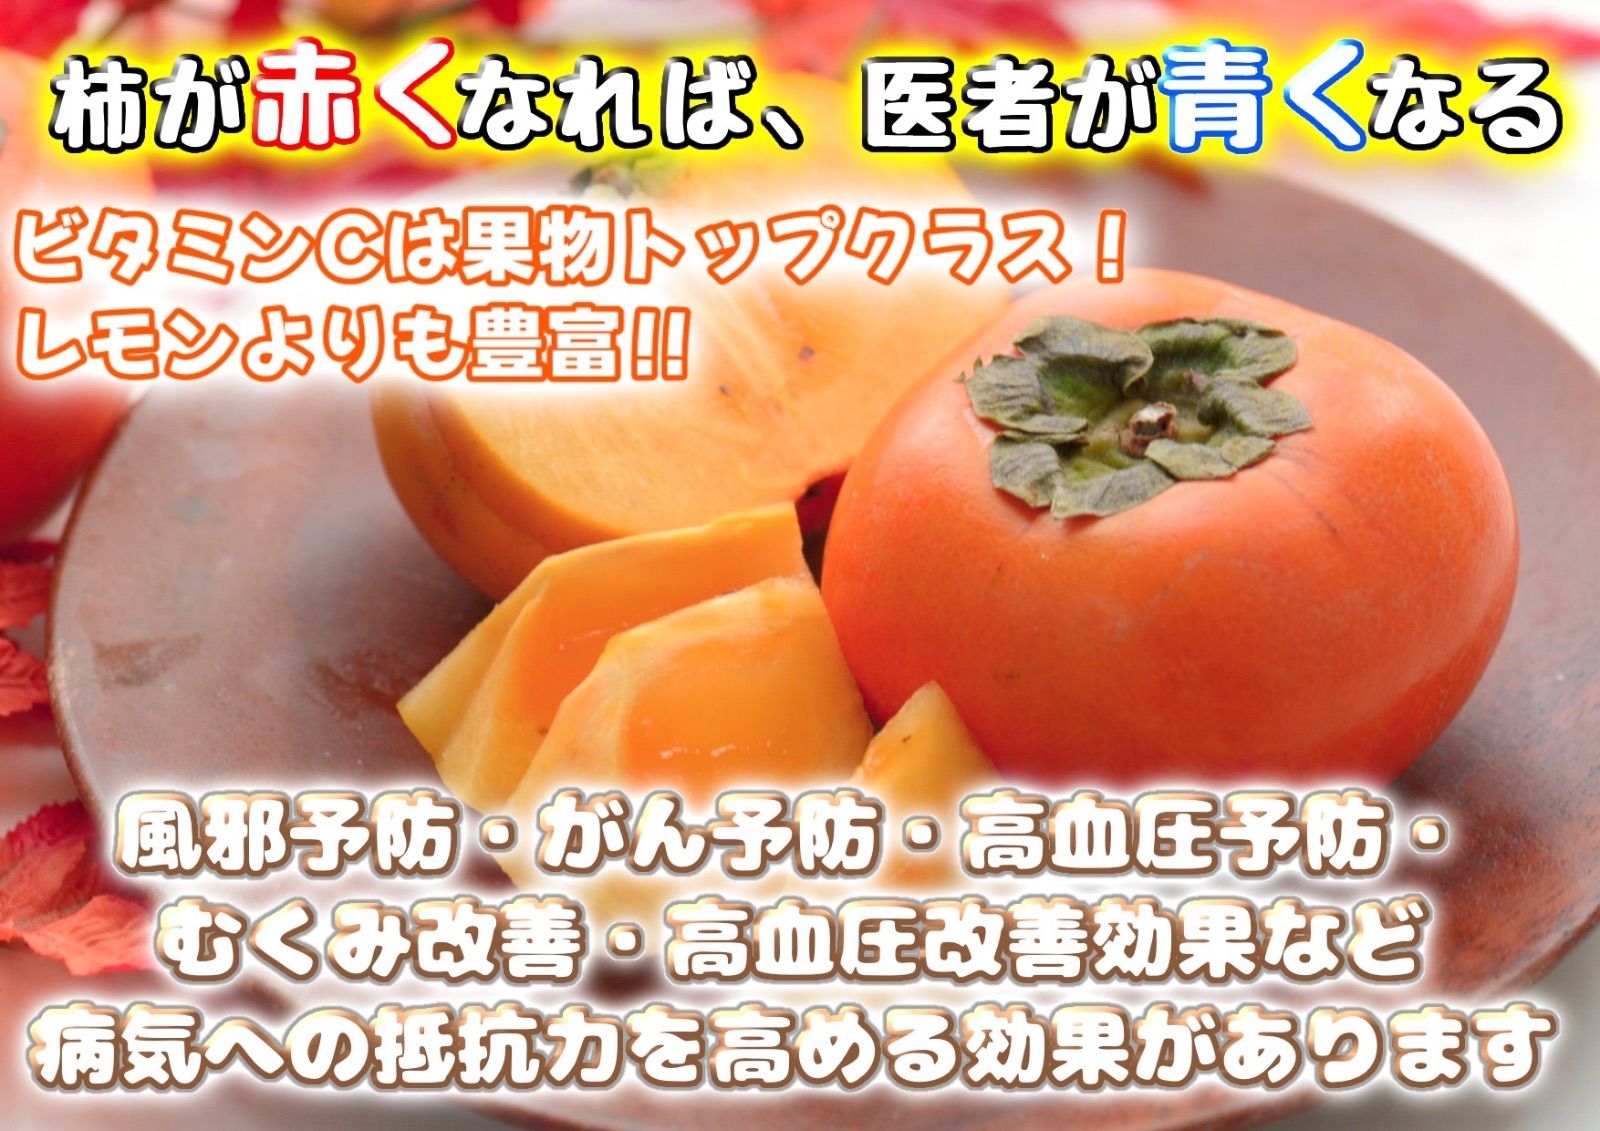 果物コメントから注文をお願いします。中谷早生柿　たねなし柿　2